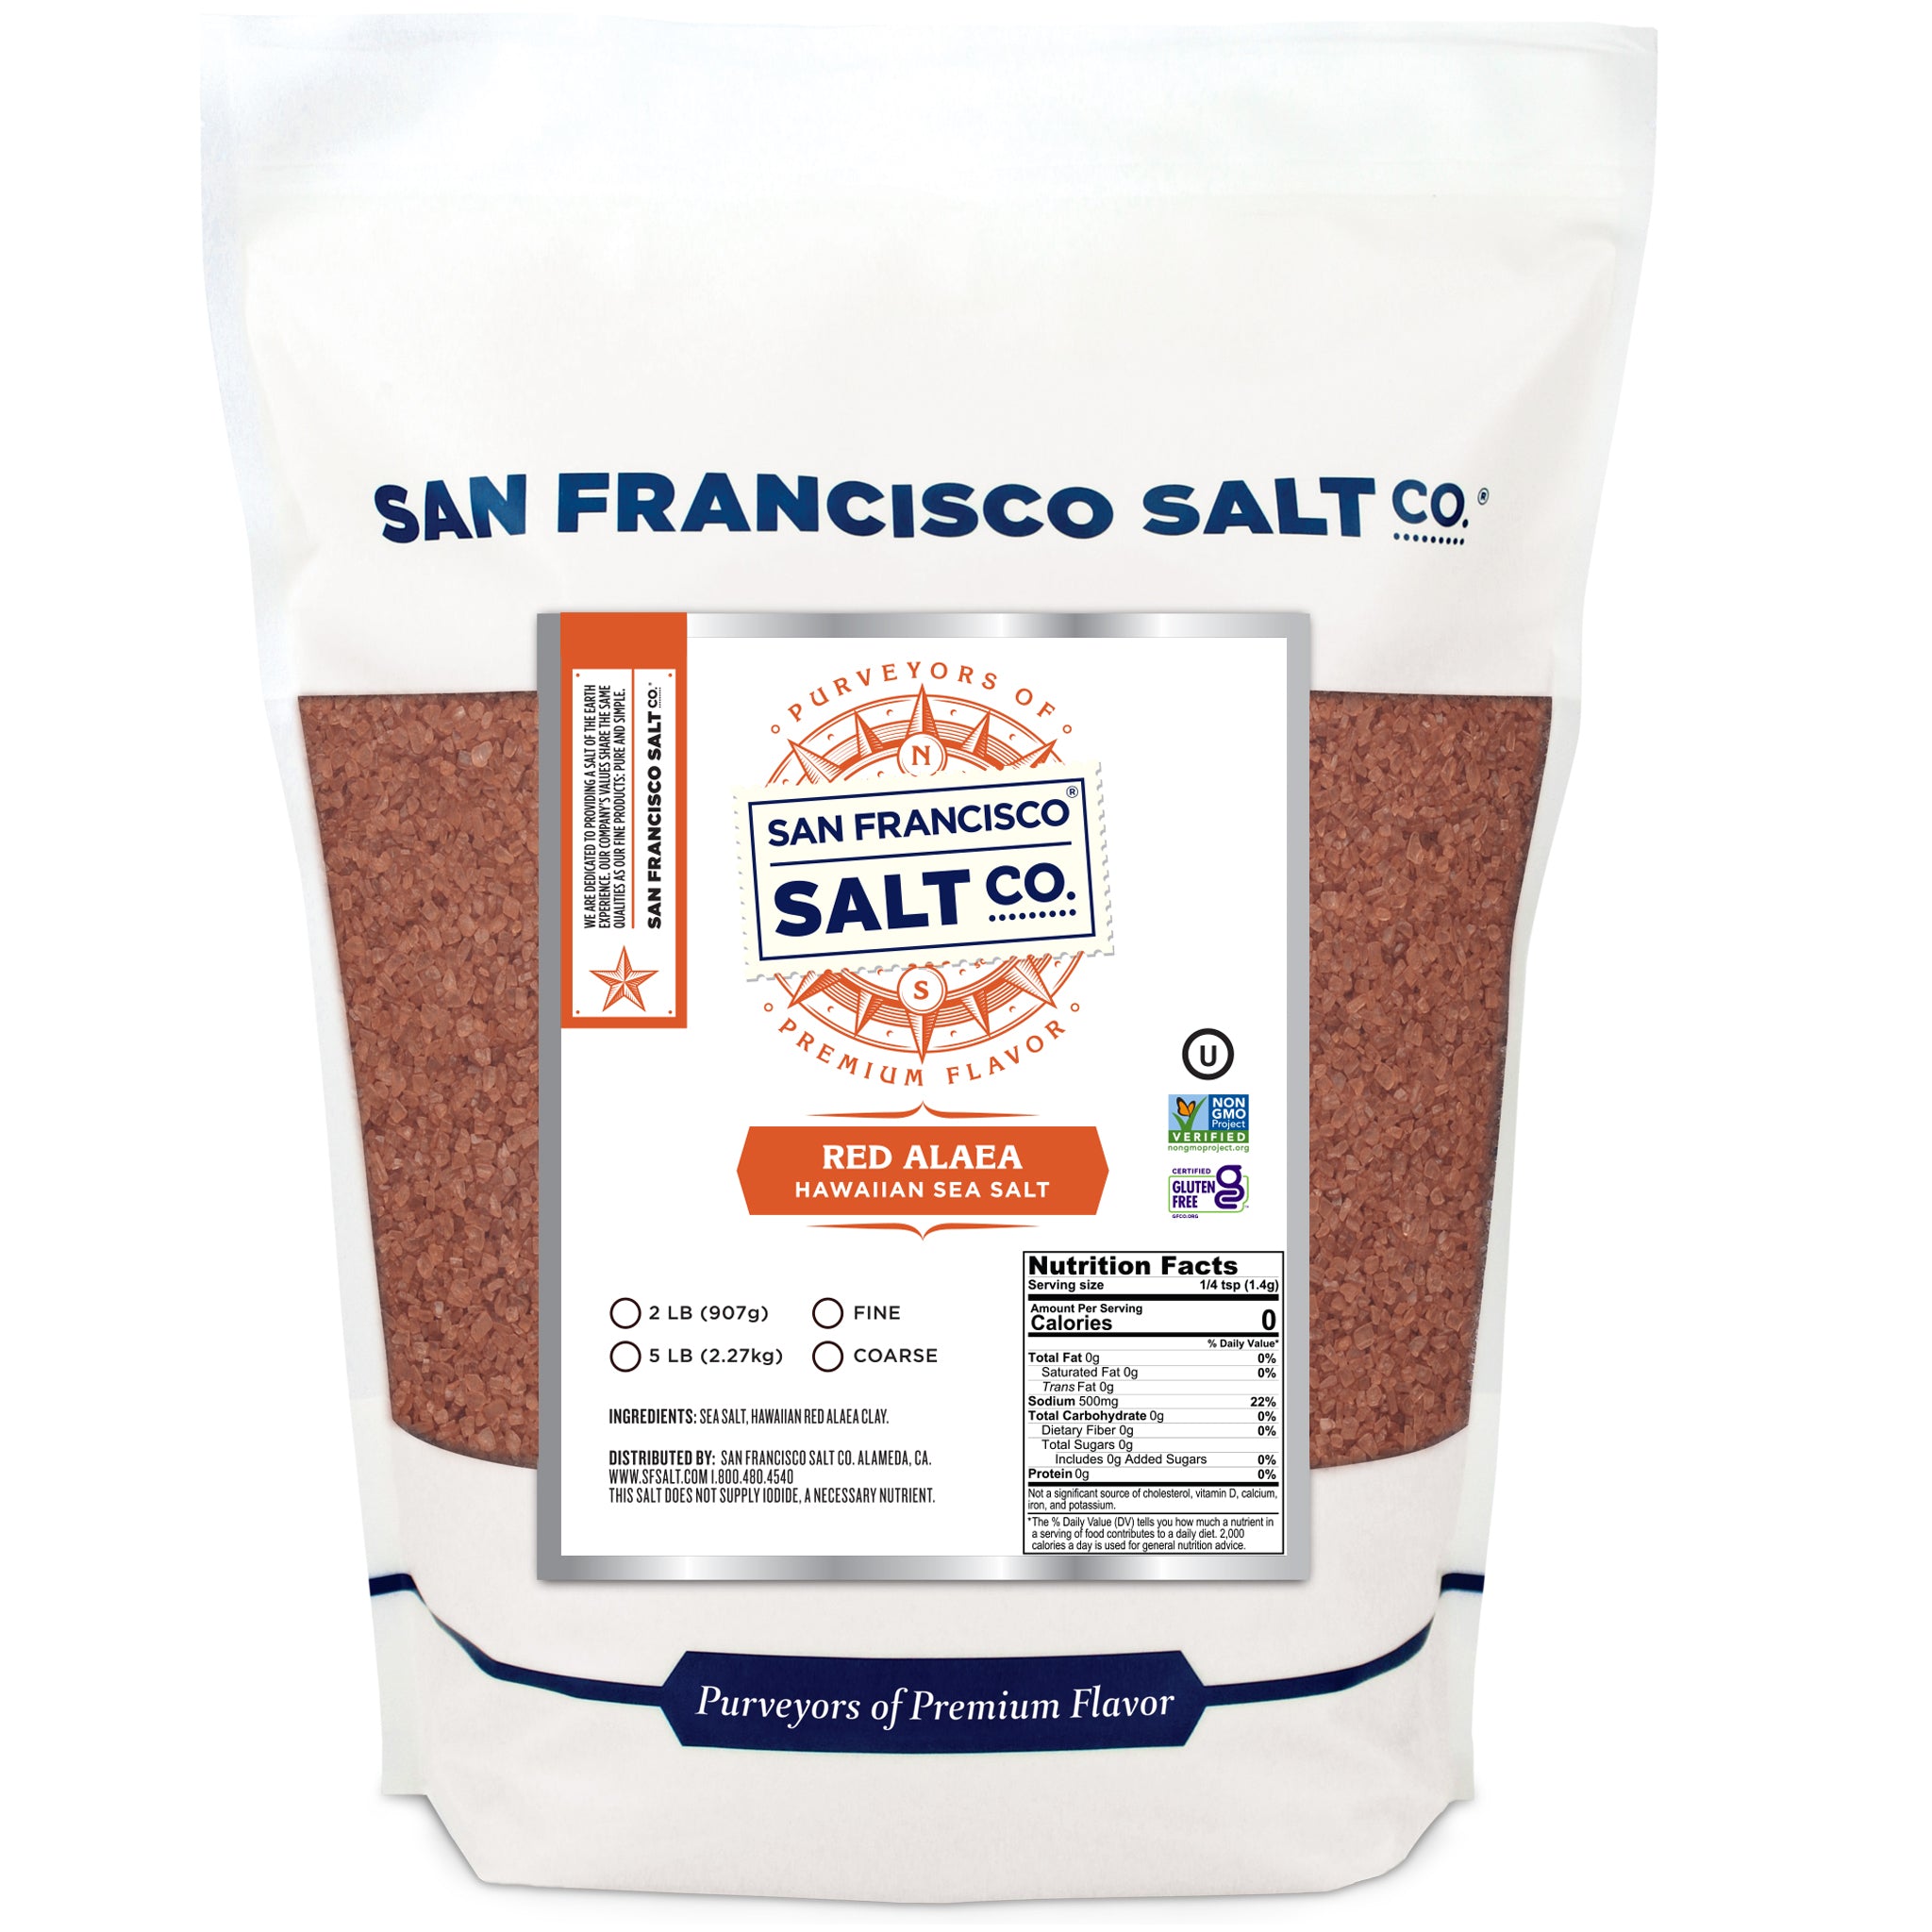 Red Alaea Hawaiian Sea Salt - San Francisco Salt Company